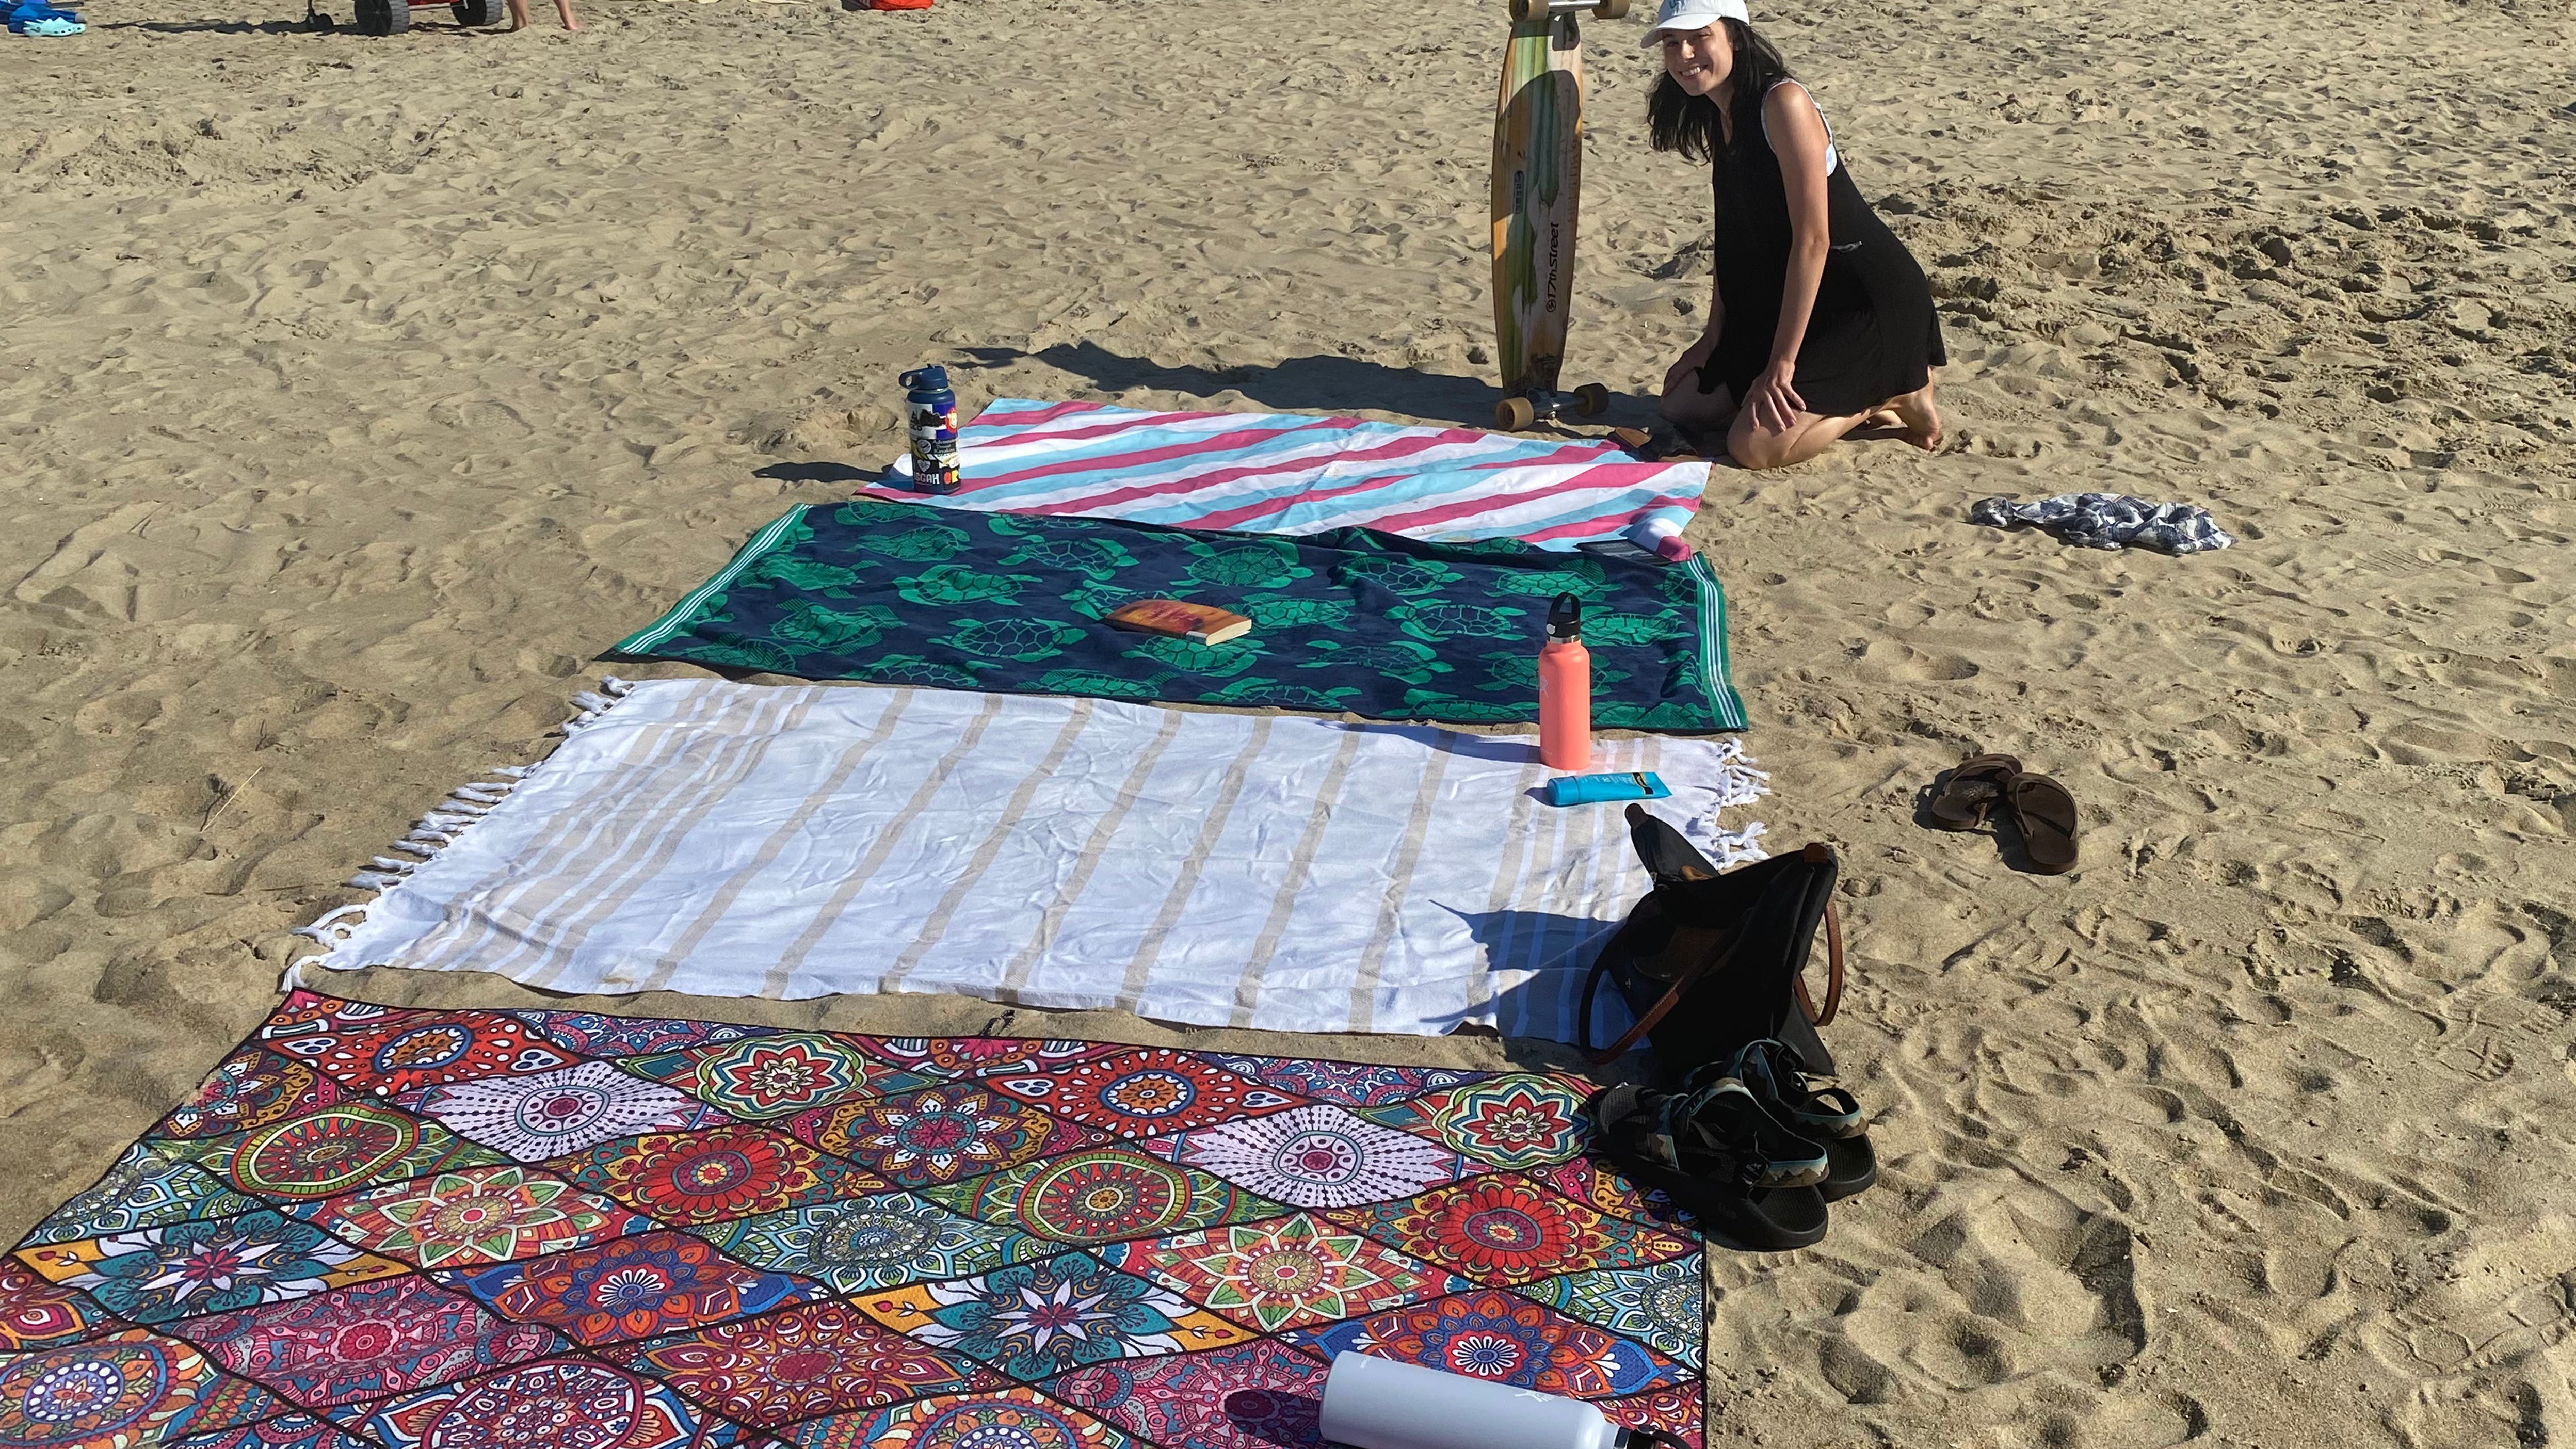 keep sand off beach towel